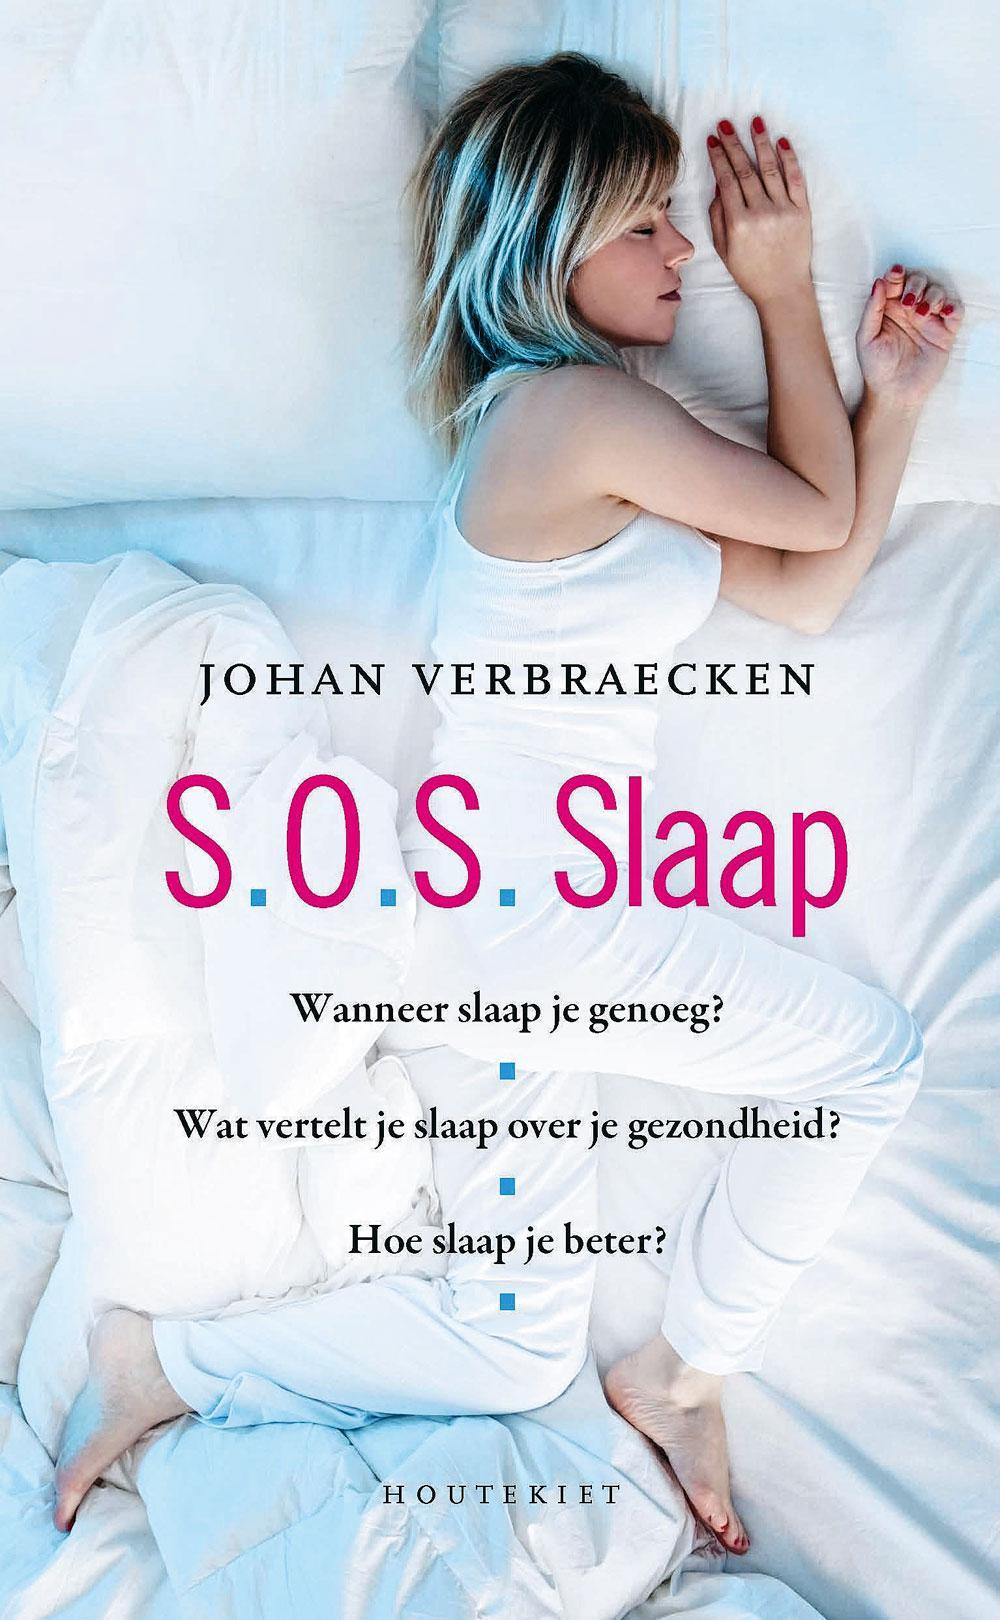 Meer tips? S.O.S. Slaap, Johan Verbraecken, Tine Bergen, 2016 (4de druk), Houtekiet, 136 blz., ISBN 9789089242884.